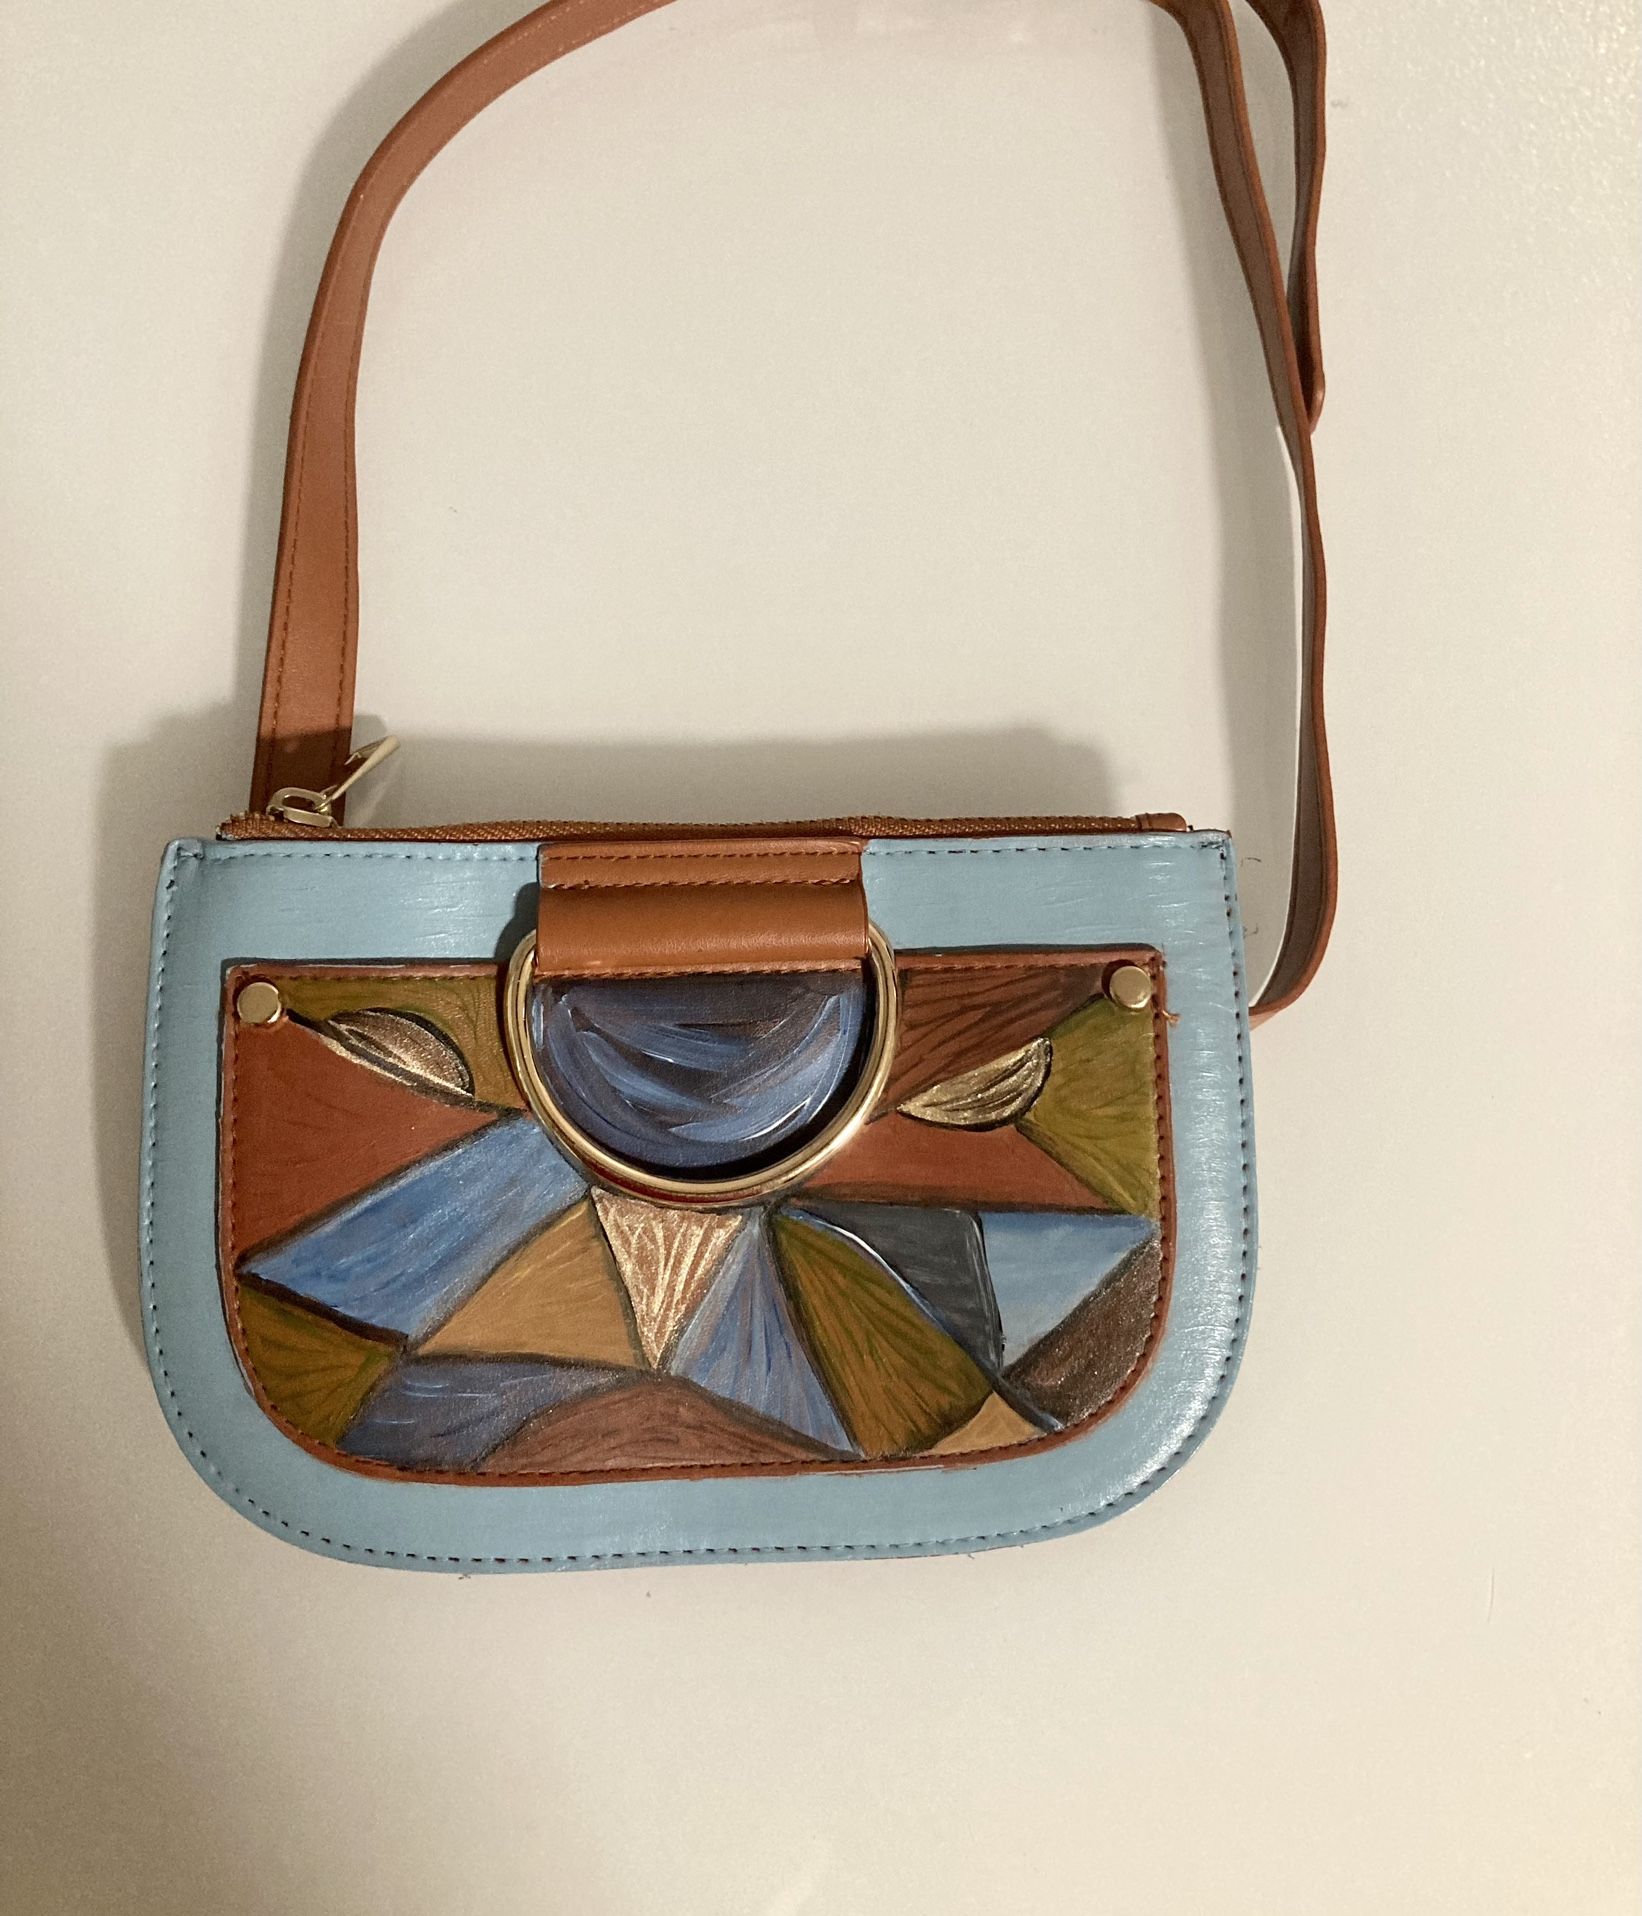 Hand-painted Waist Bag For Women / Girls